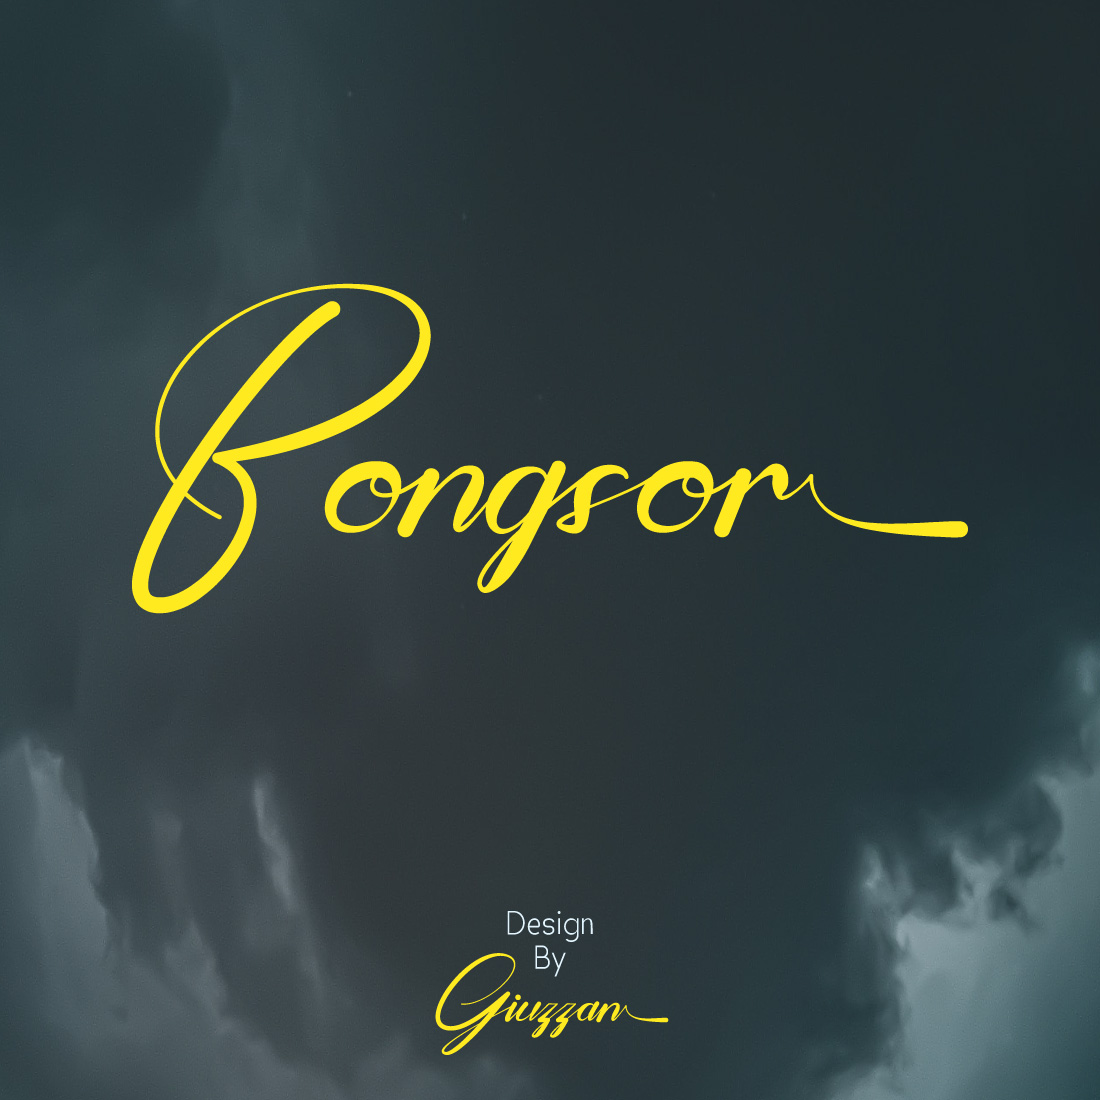 Bongsor cover image.